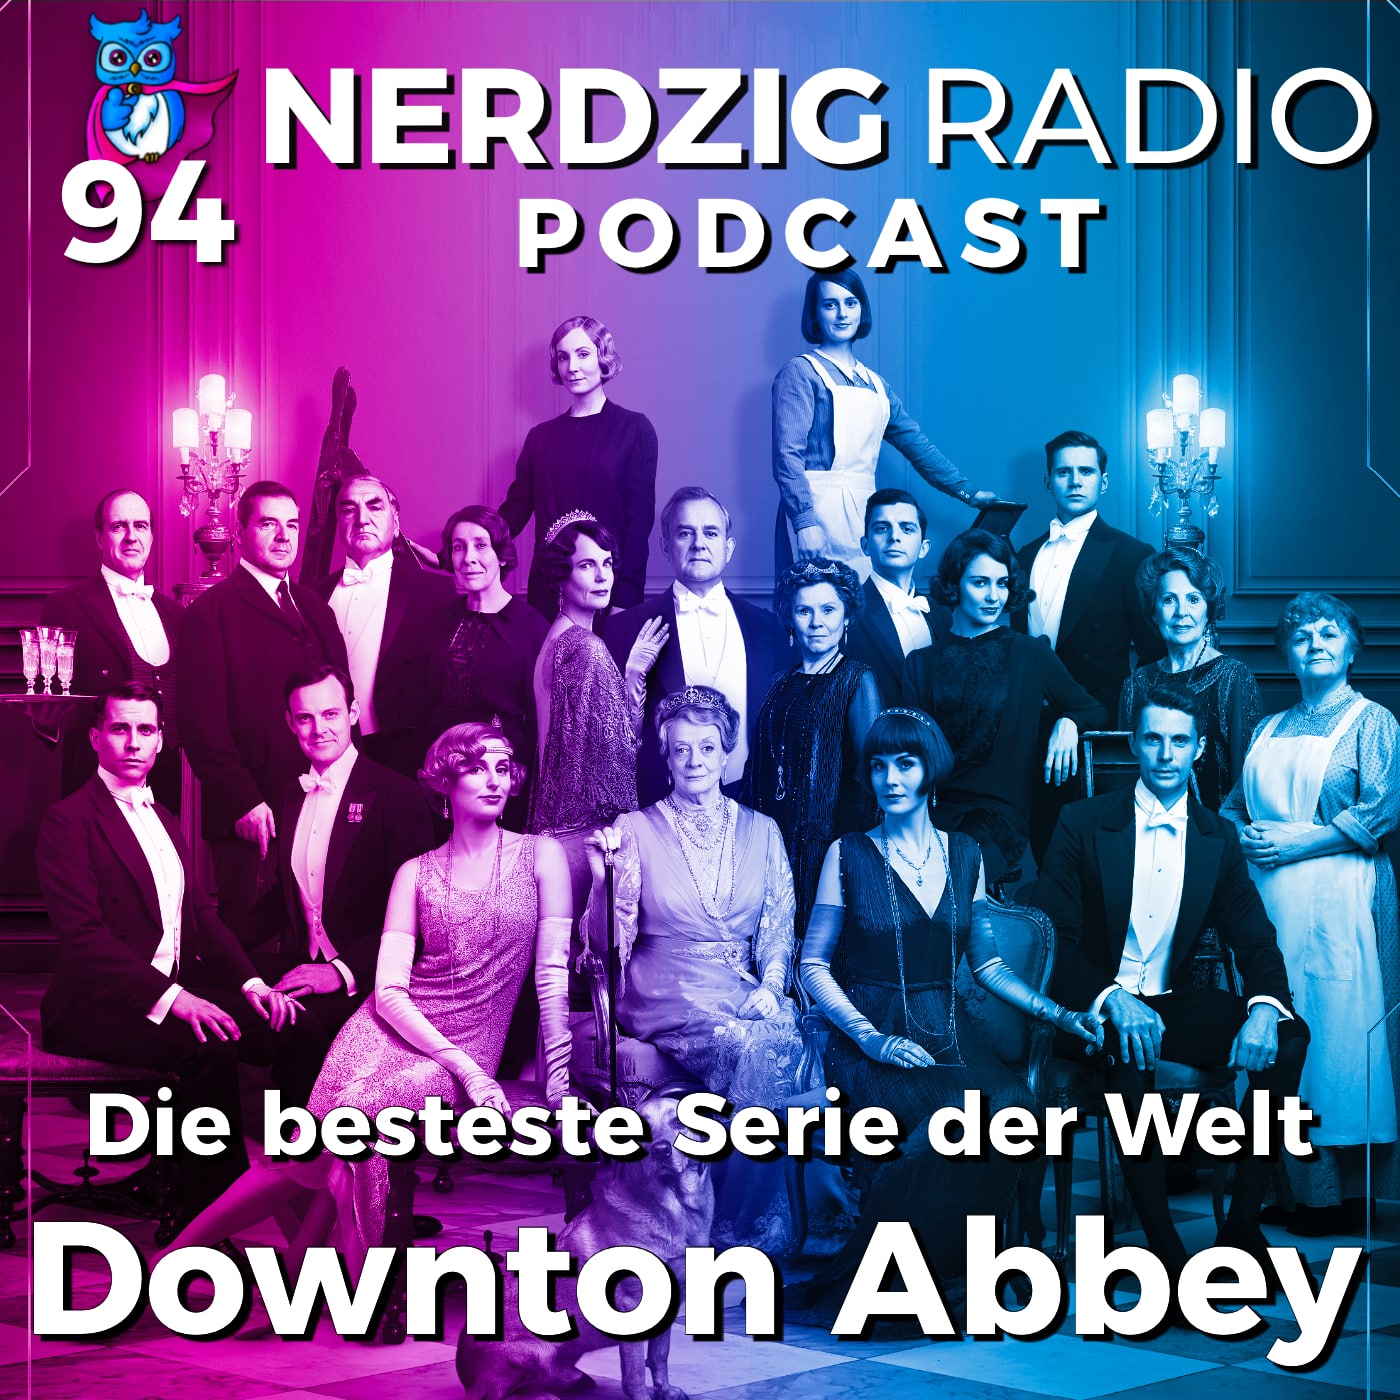 Nerdzig Radio #94 – Downton Abbey, die besteste Serie der Welt